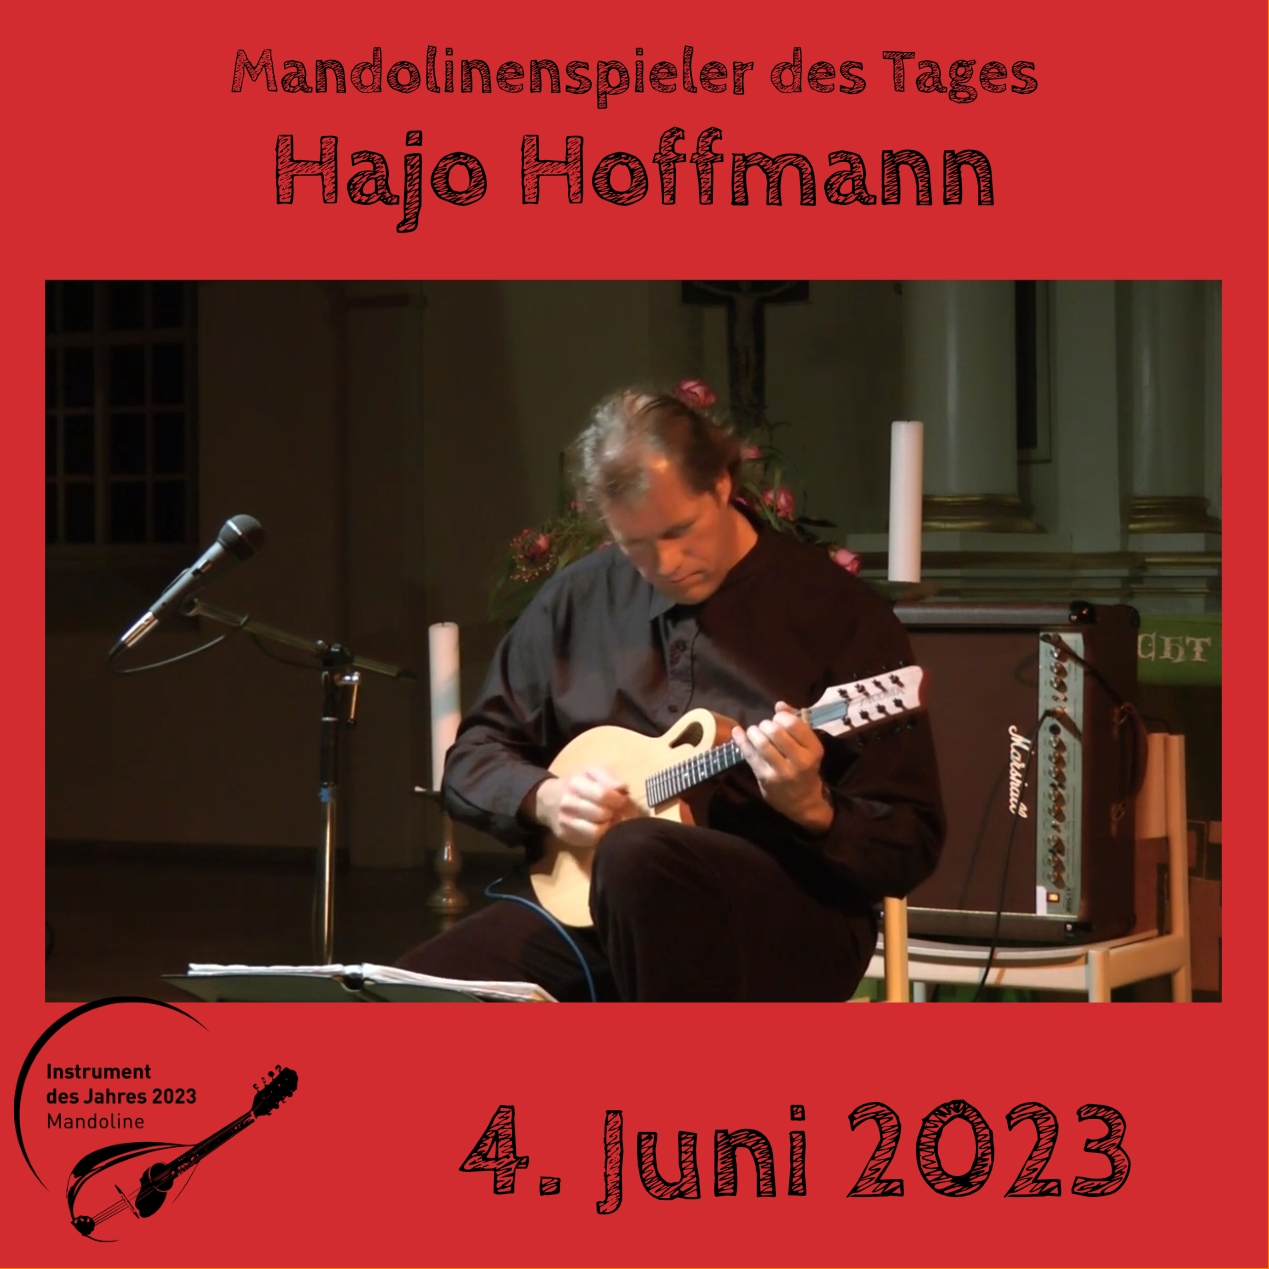 Hajo Hoffmann Mandoline Instrument des Jahres 2023 Mandolinenspieler Mandolinenspielerin des Tages